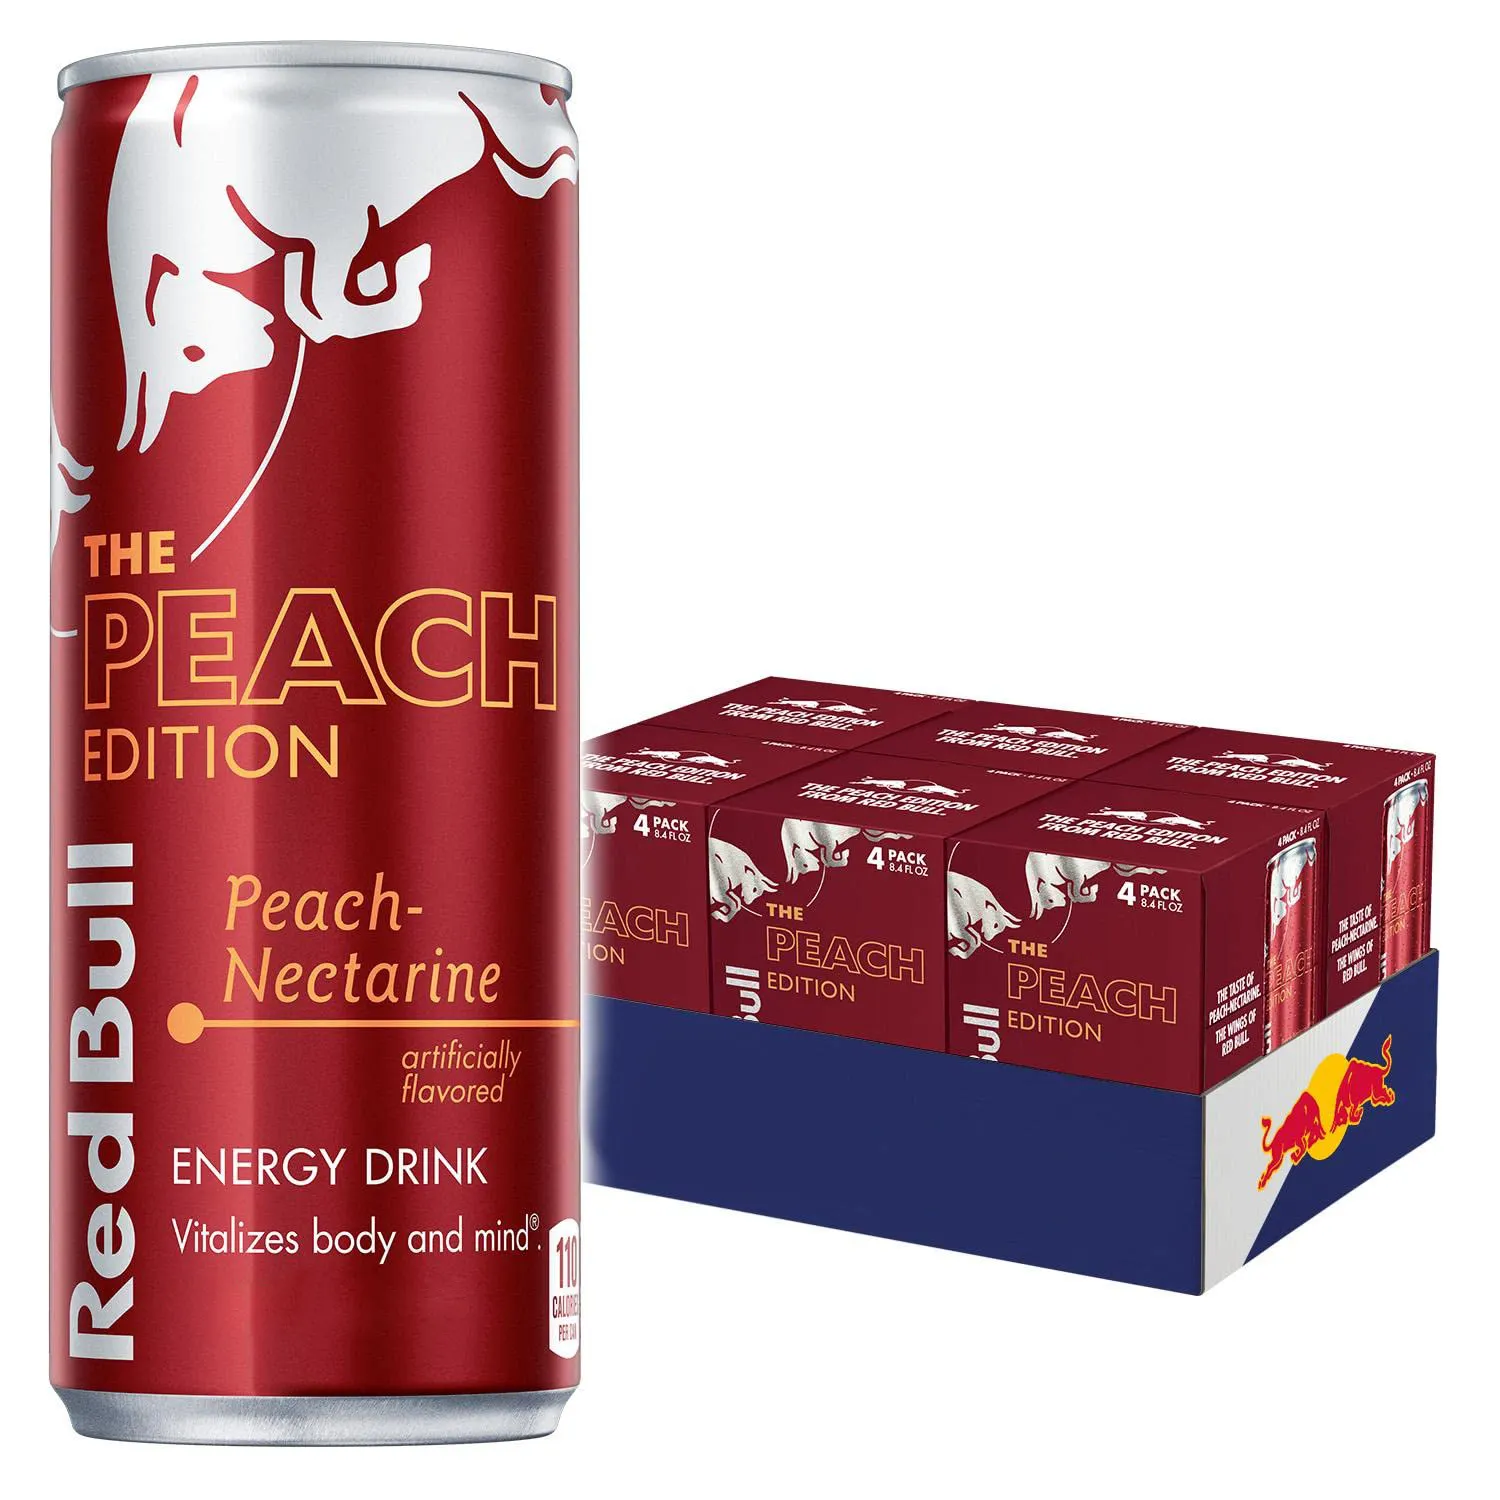 Red Bull Energiegetränk 12 Fl oz  Packung mit 4 Dosen  Steigt Ausdauer, Konzentration verbessert  Set mit Energieboost